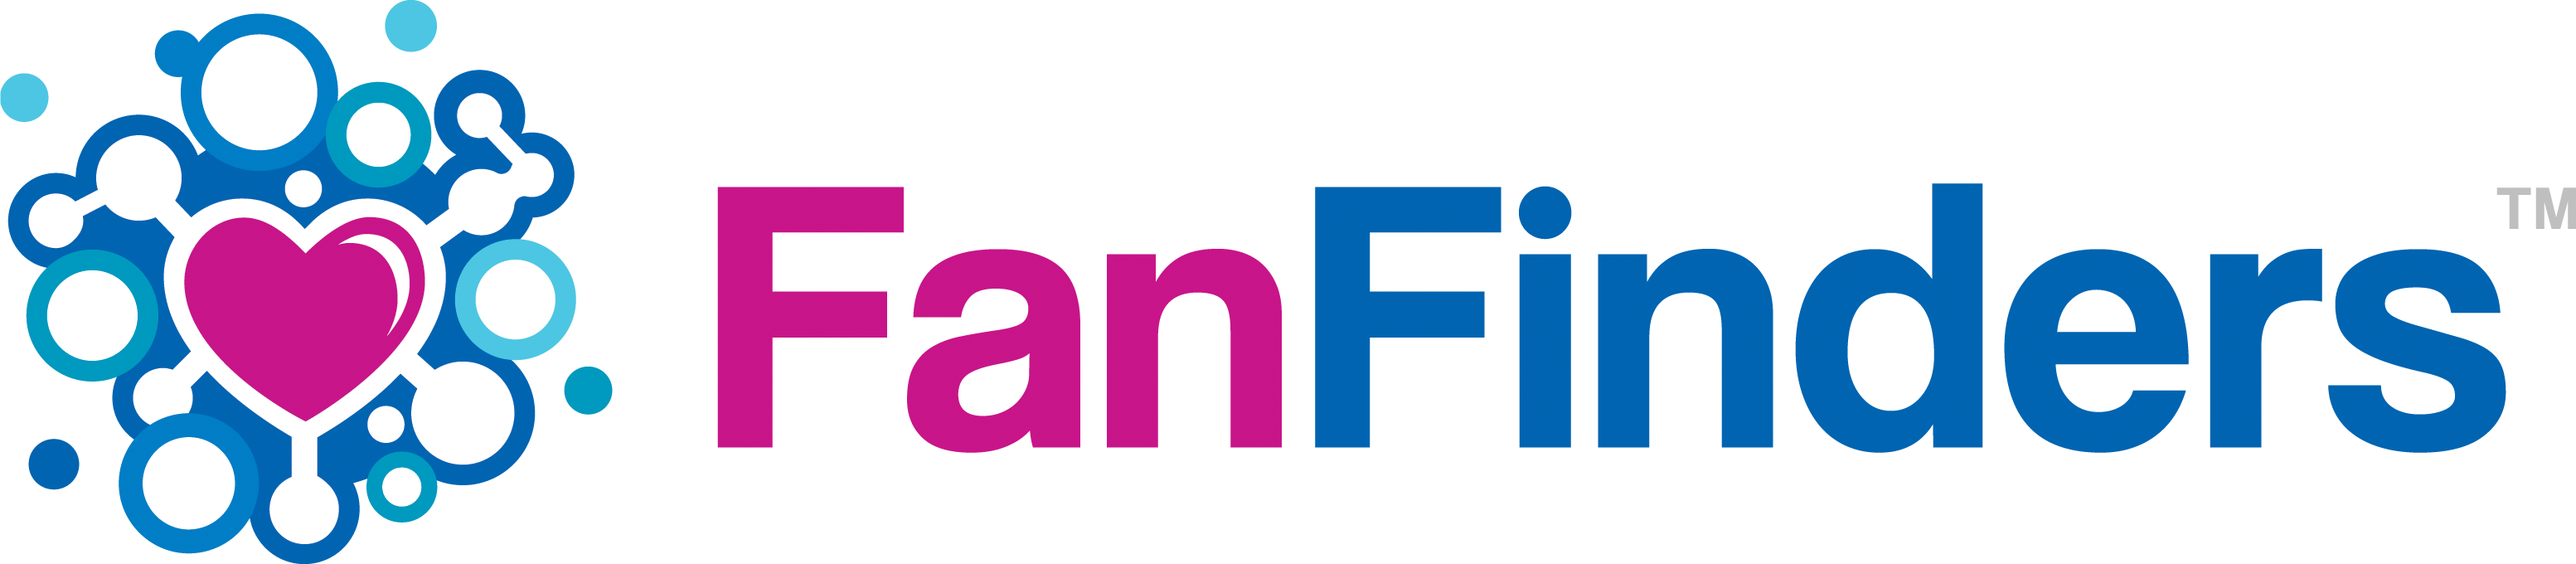 FanFinders-Horiz-logo